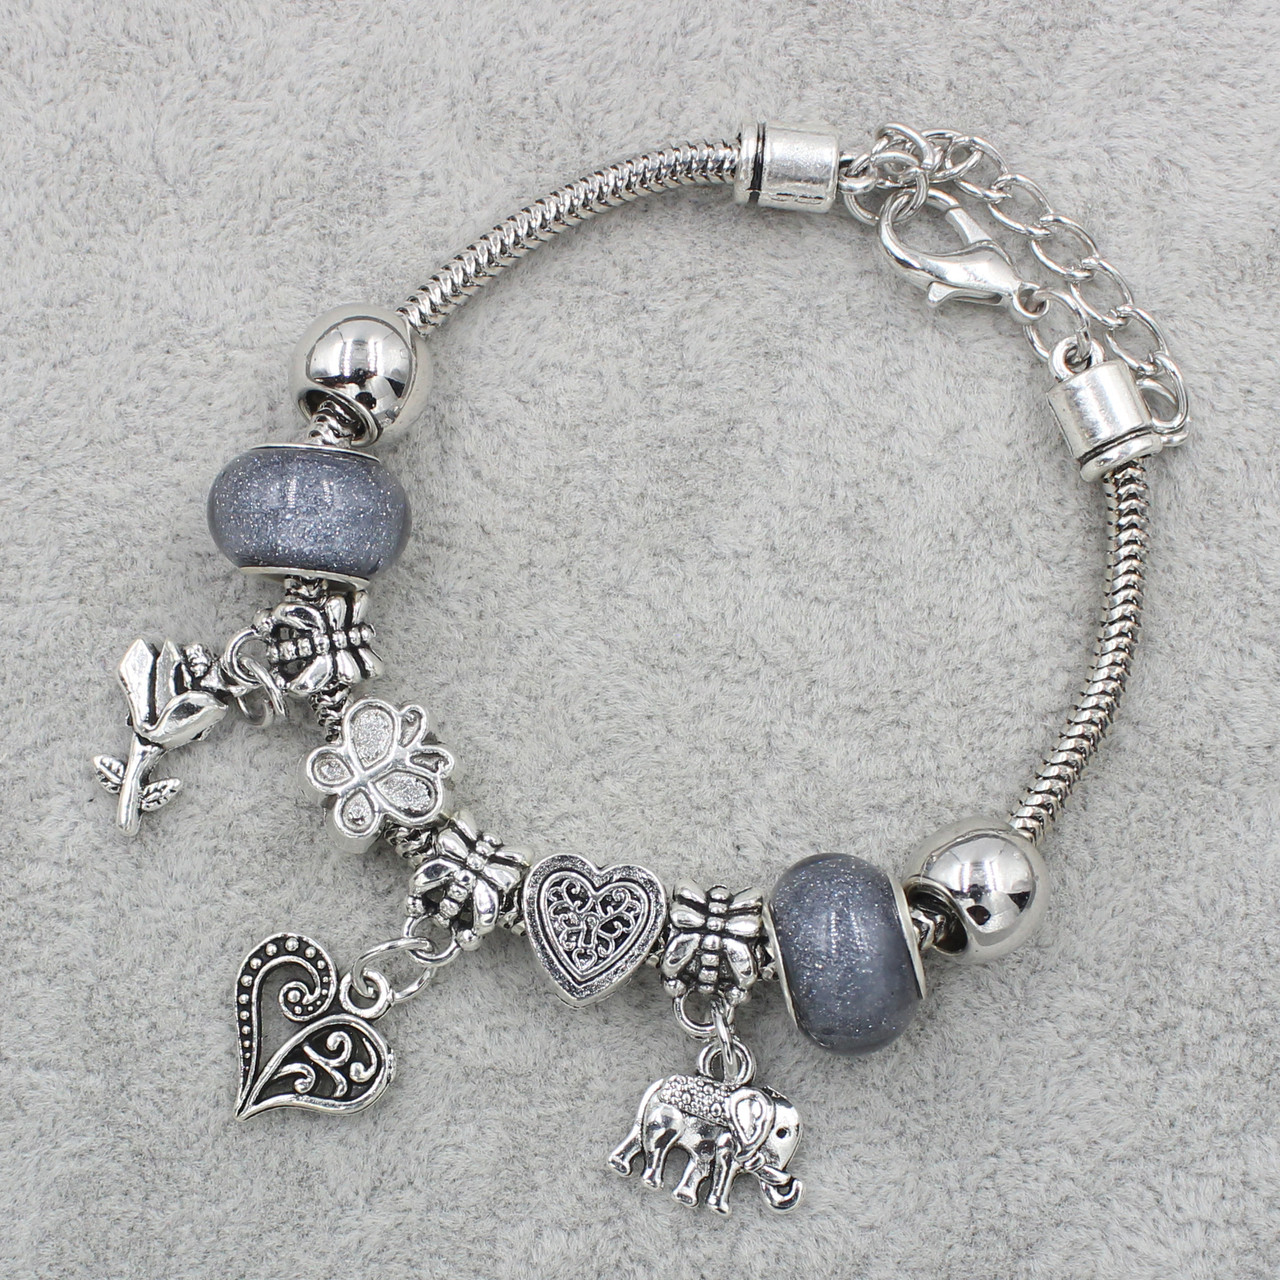 Pandora браслет серебристого цвета сердце с серыми шармами 9 штук длина браслета 22 см ширина 3 мм